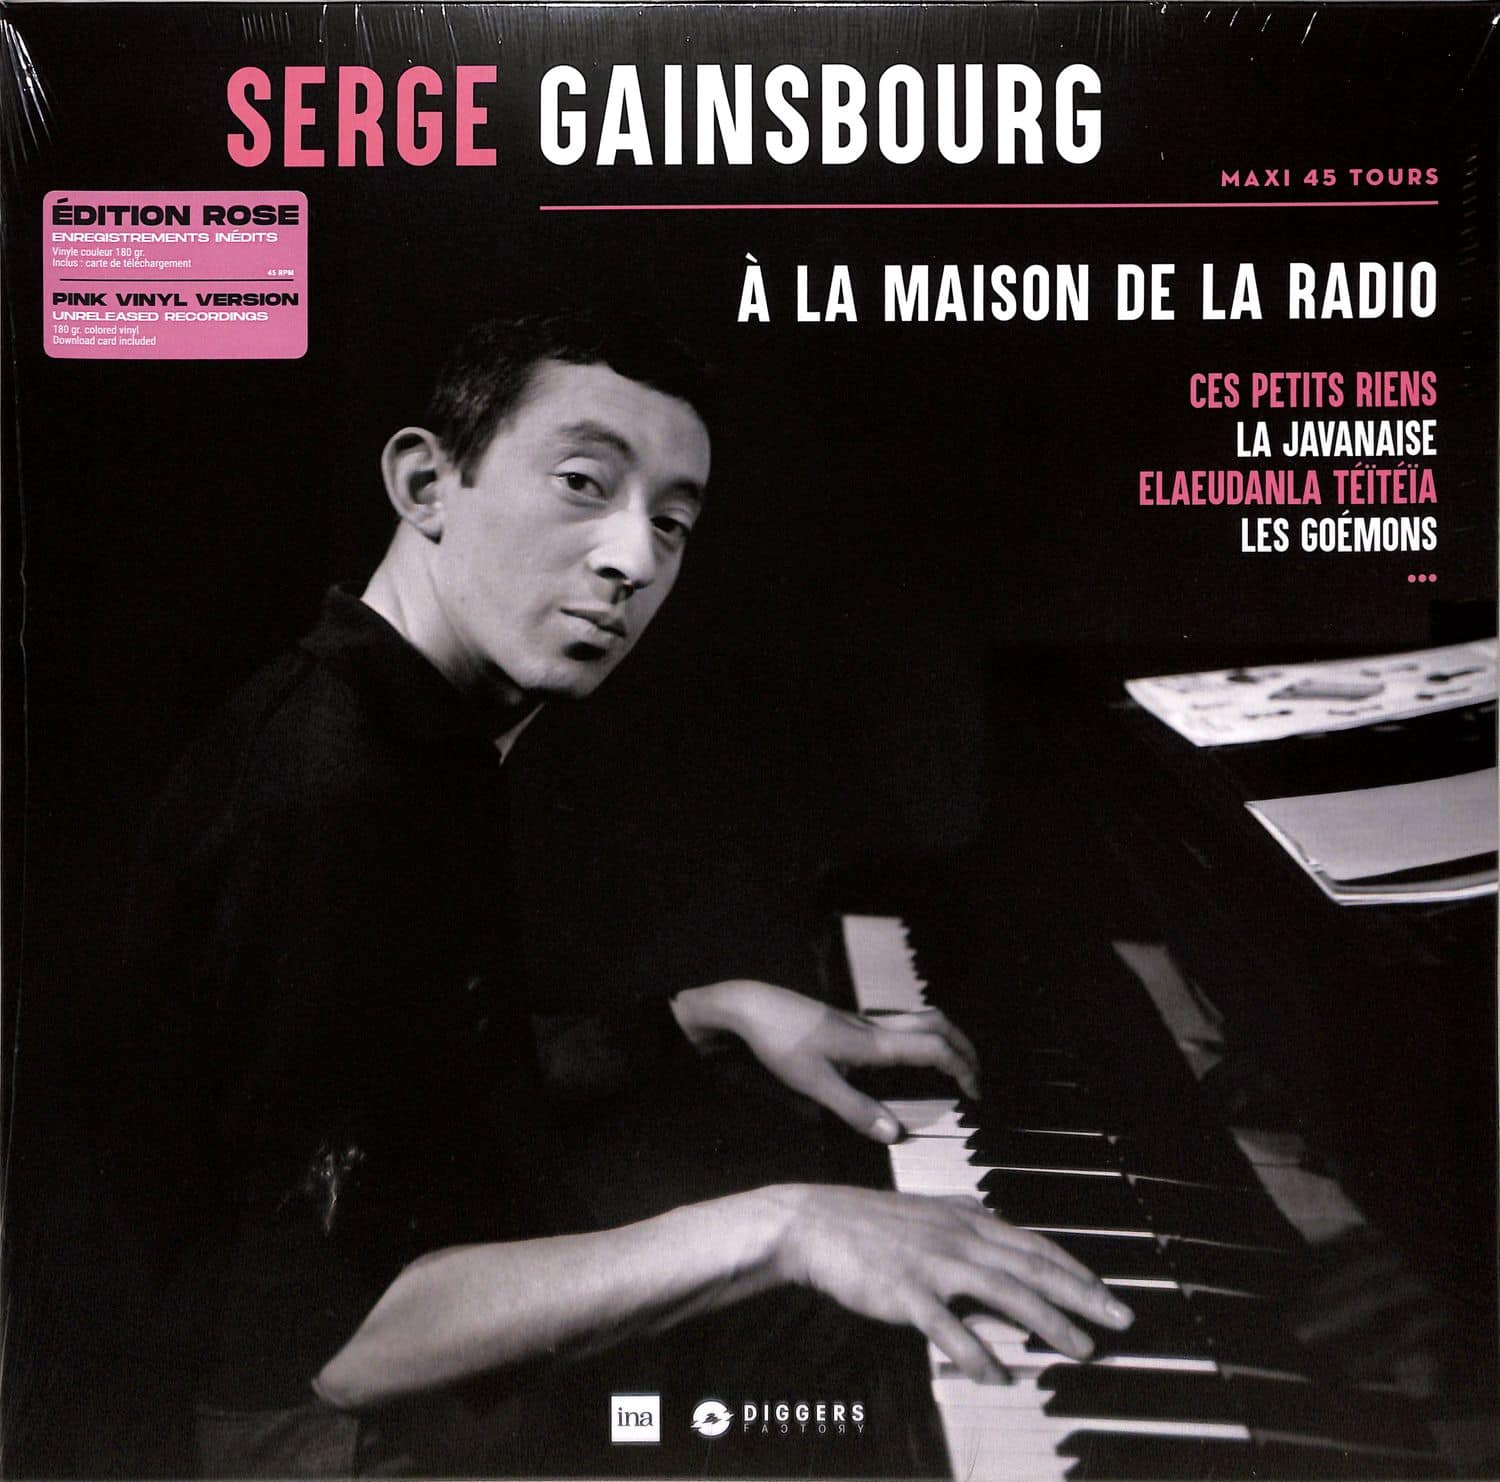 Serge Gainsbourg - A LA MAISON DE LA RADIO 